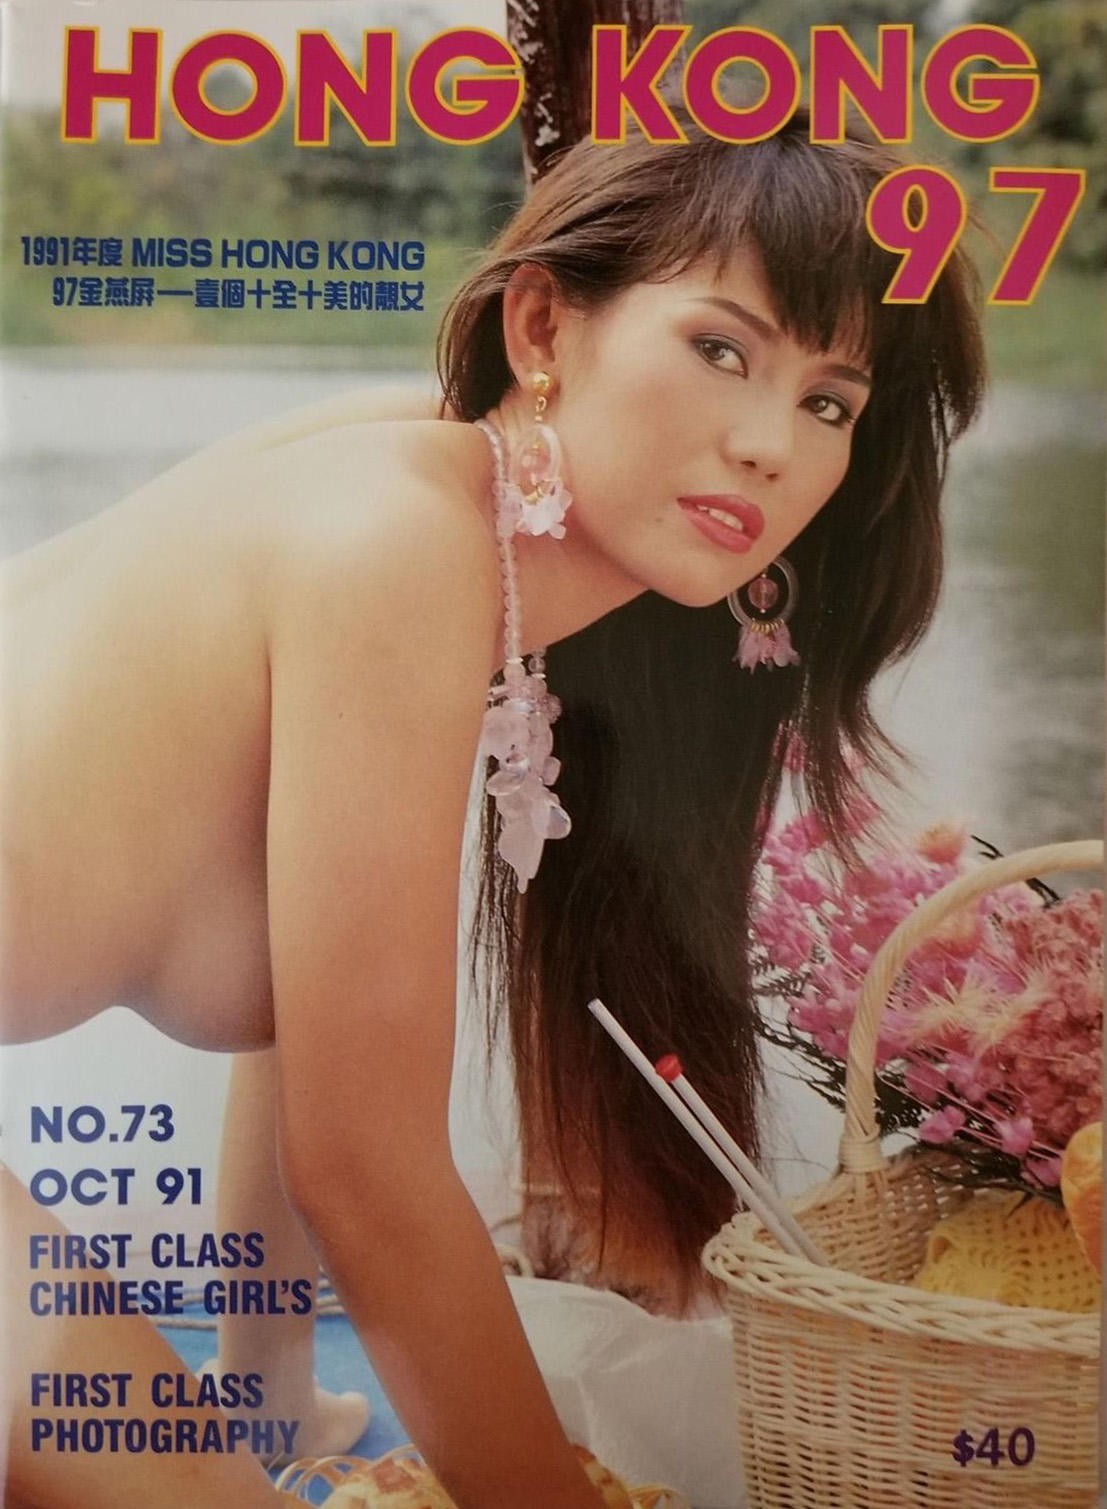 Hong Kong 97 # 73, October 1991 magazine back issue Hong Kong 97 Chinese magizine back copy 